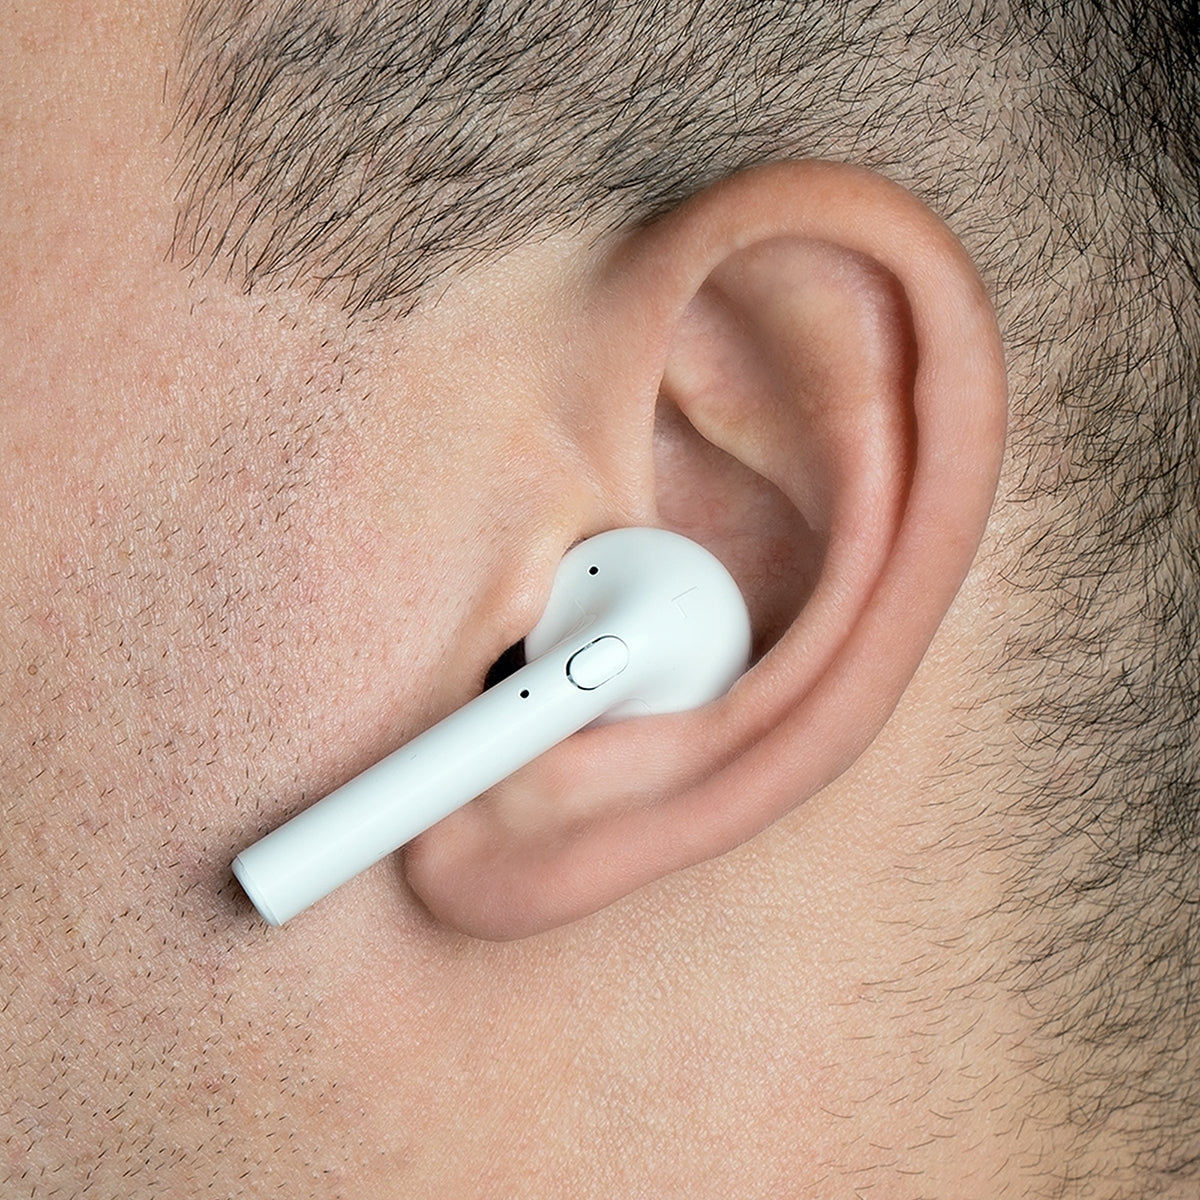 MACXIFY Wireless Earbuds